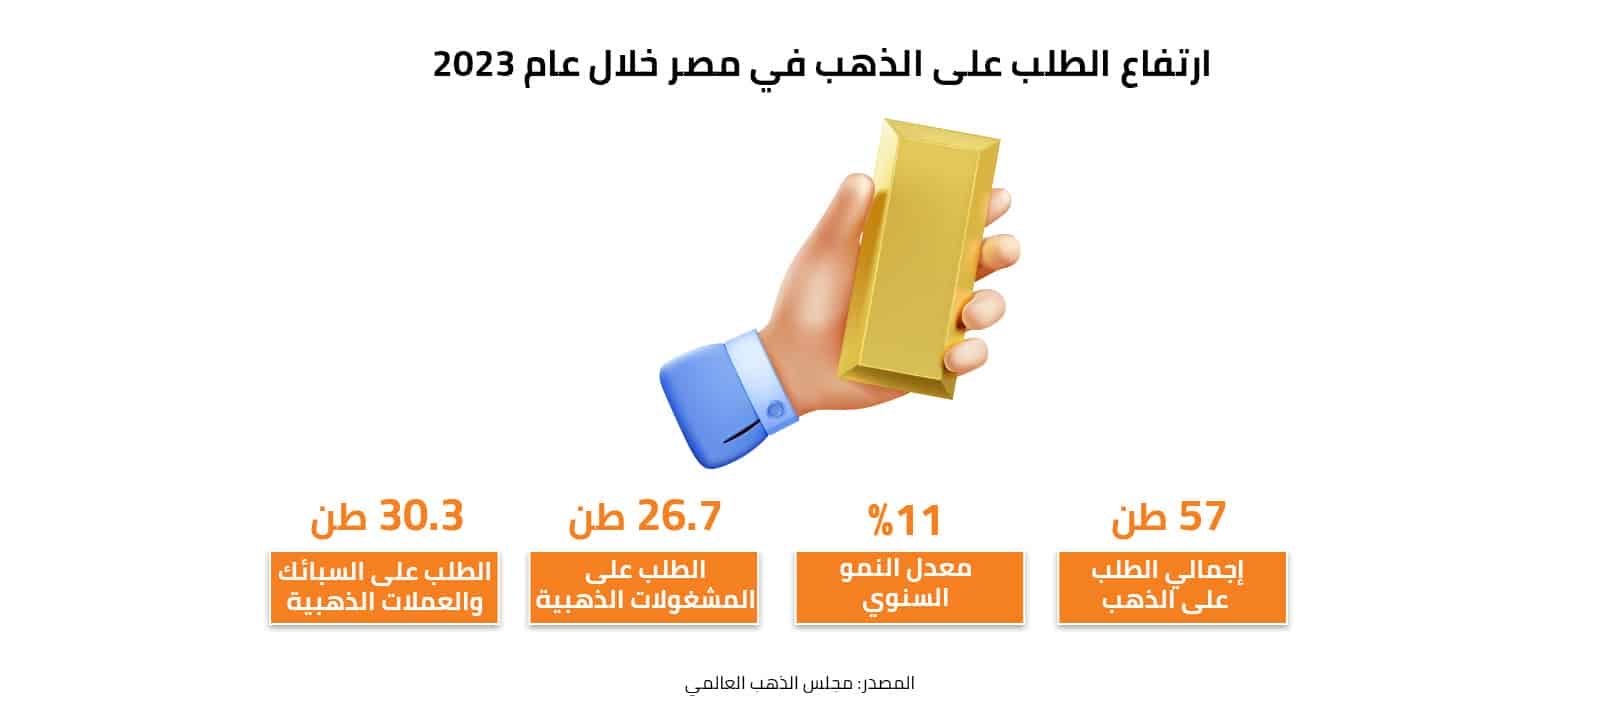 ارتفاع الطلب على الذهب في مصر خلال عام 2023 